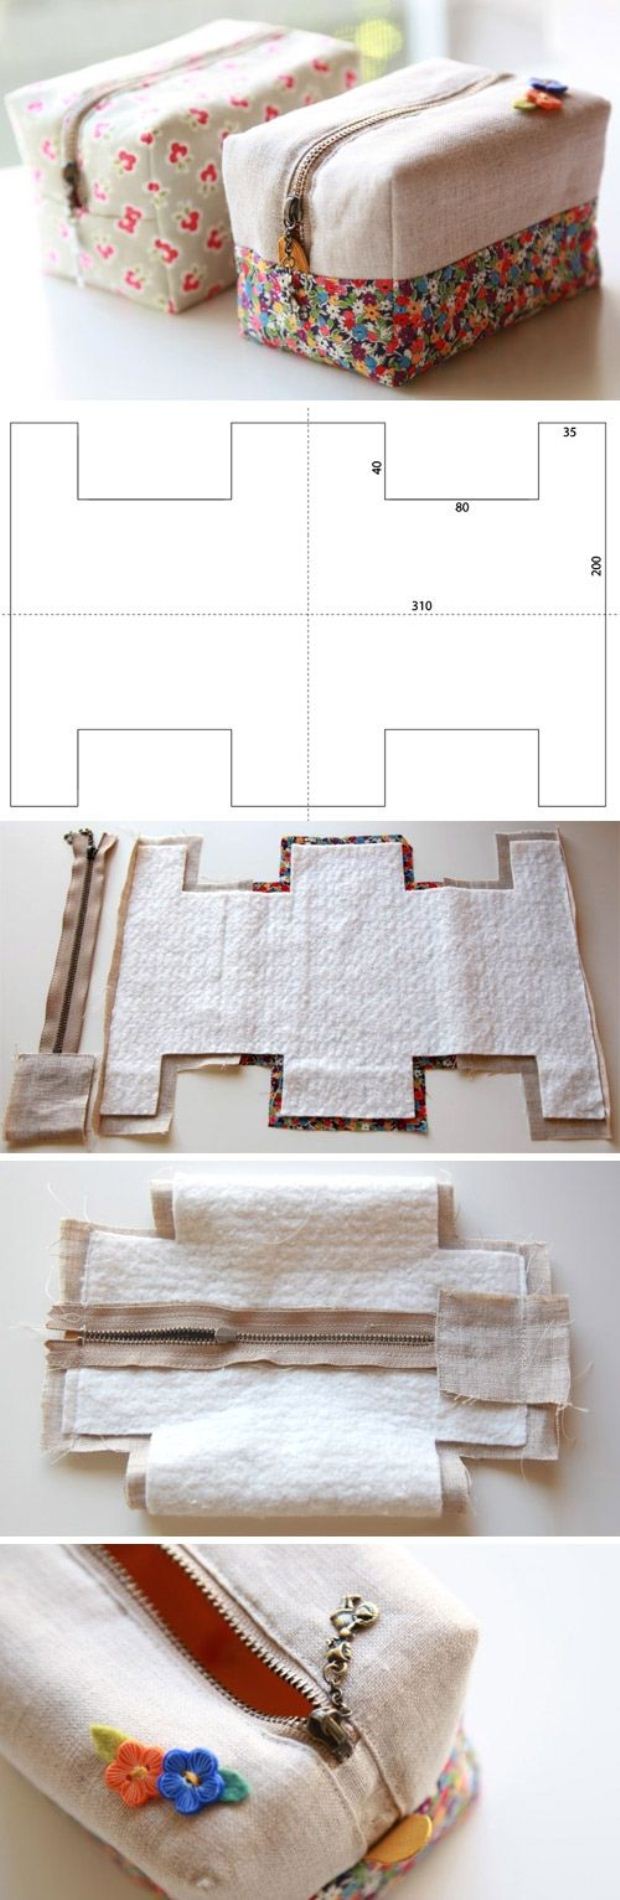 Как сделать пенал из ткани своими руками: красивая сумочка для ручек